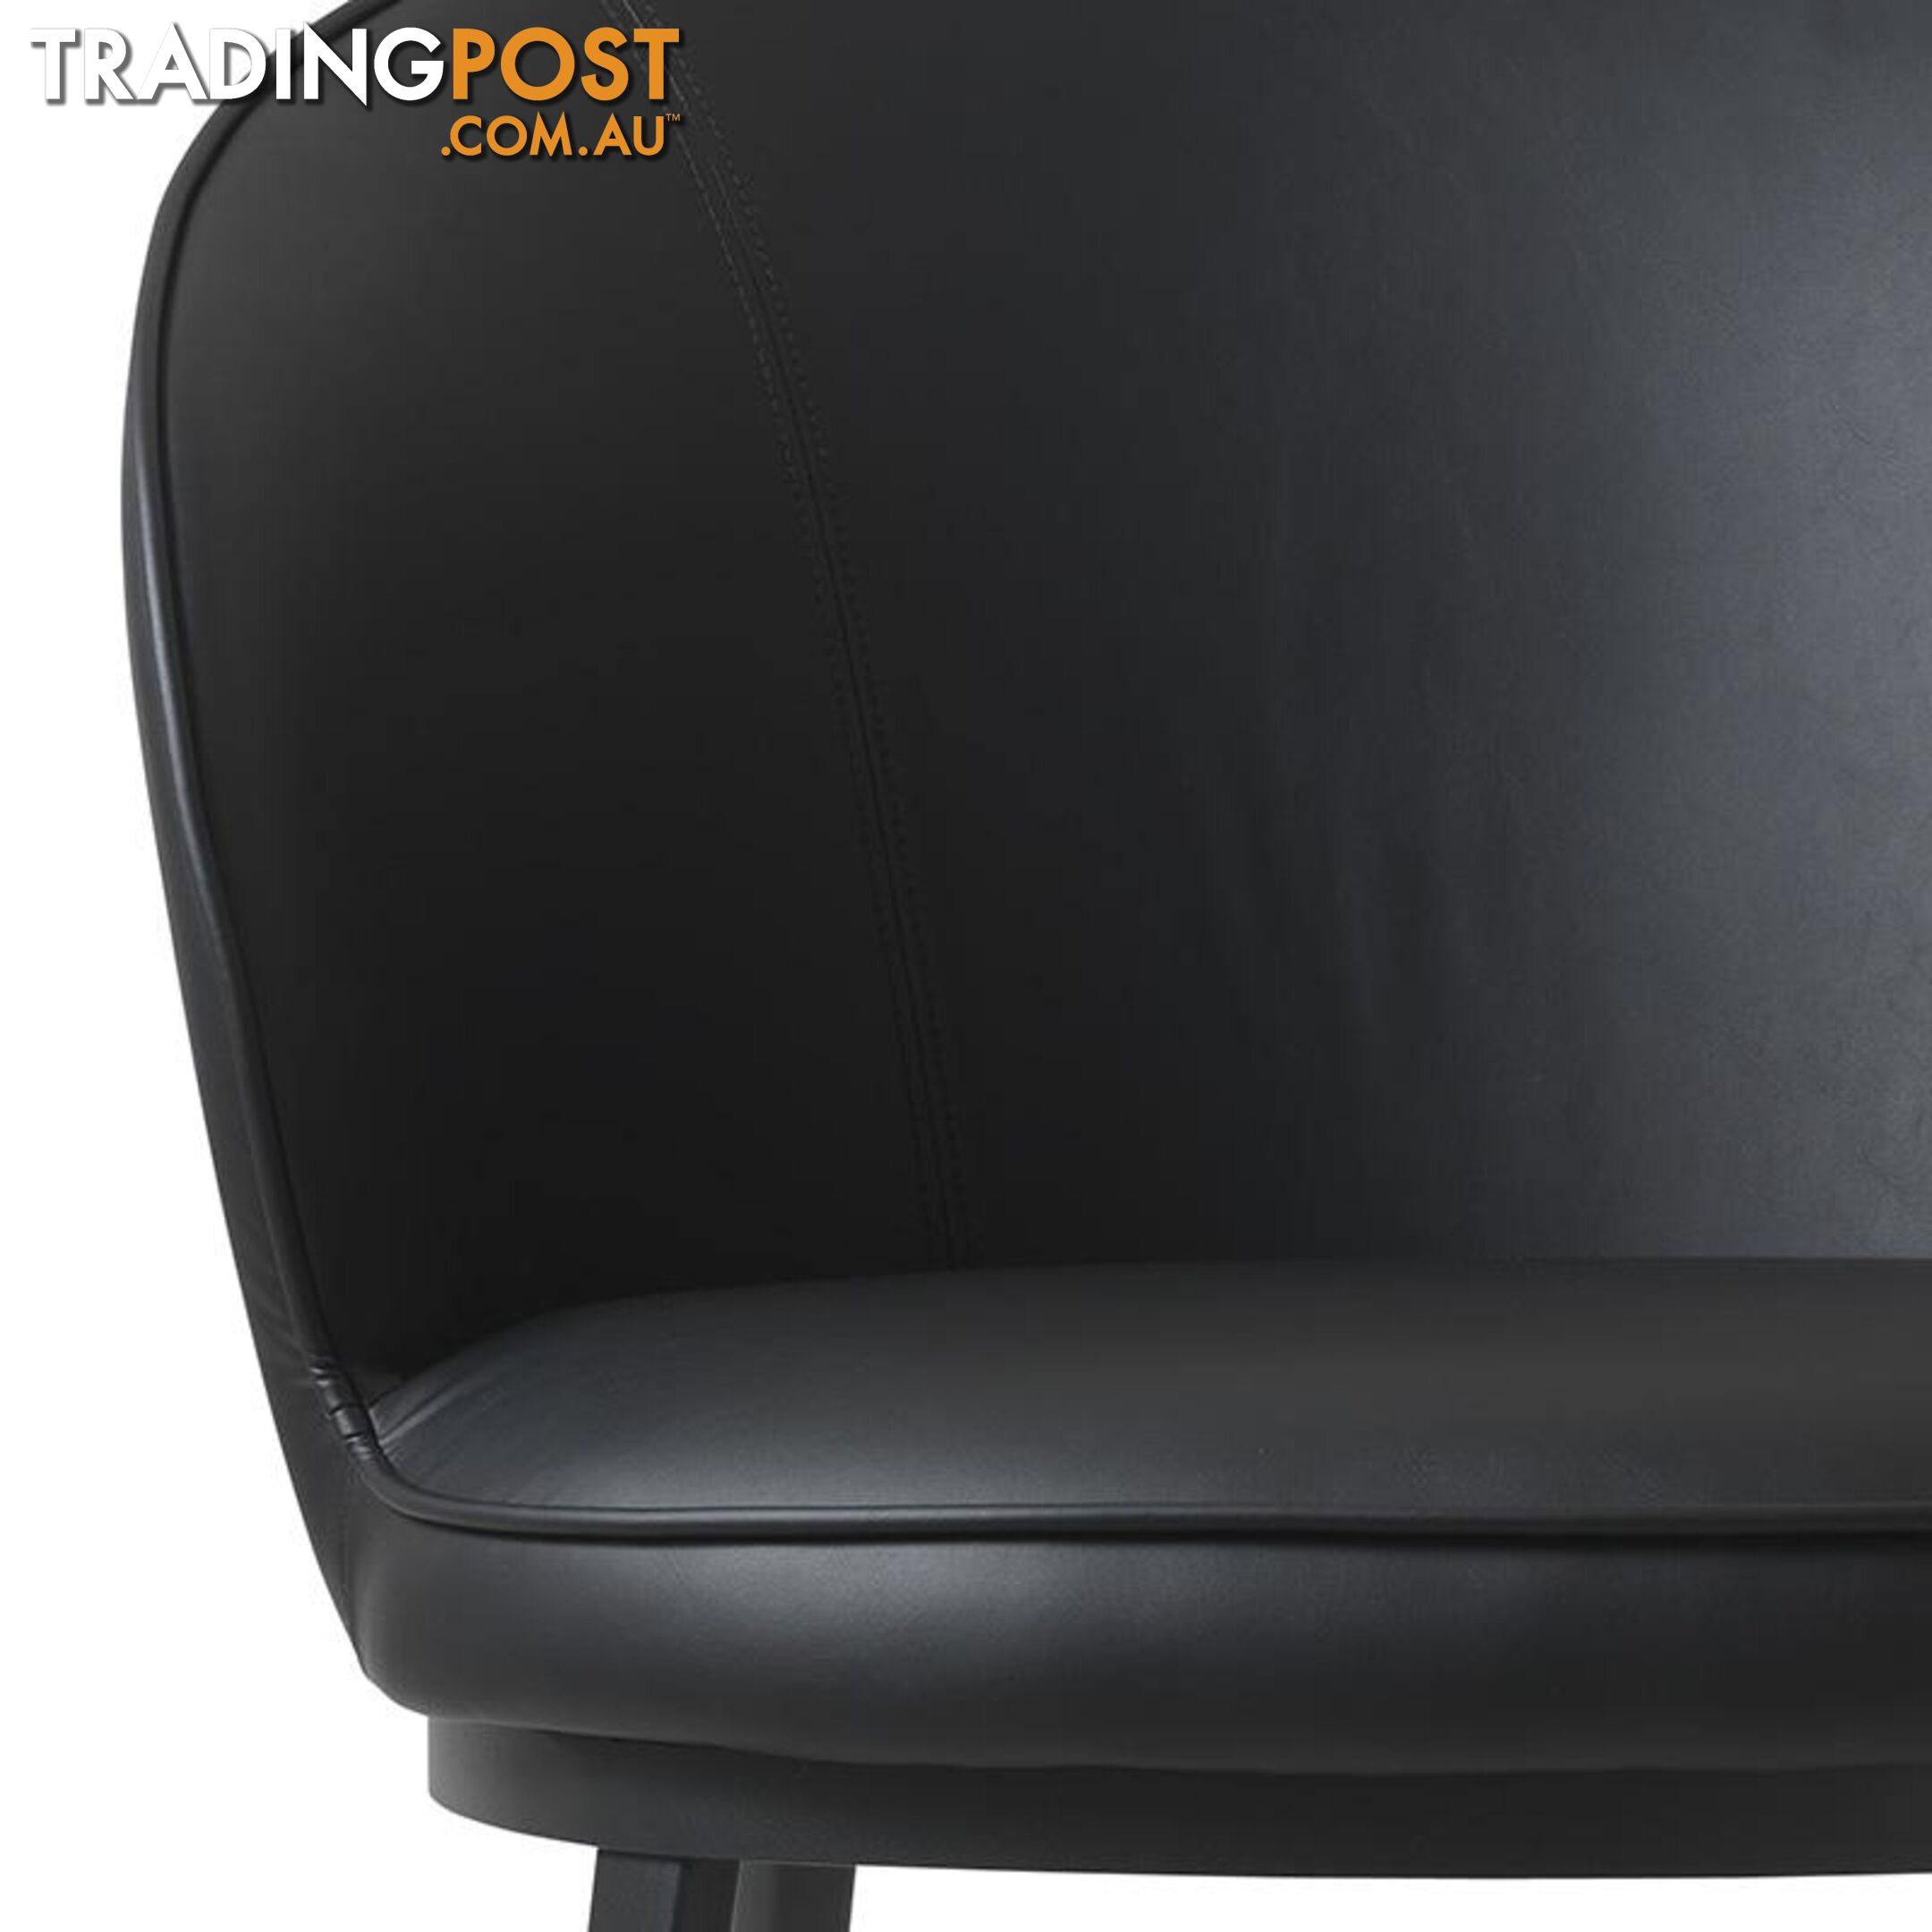 GAIN Lounge Chair - Black - 41180000 - 5704745090818